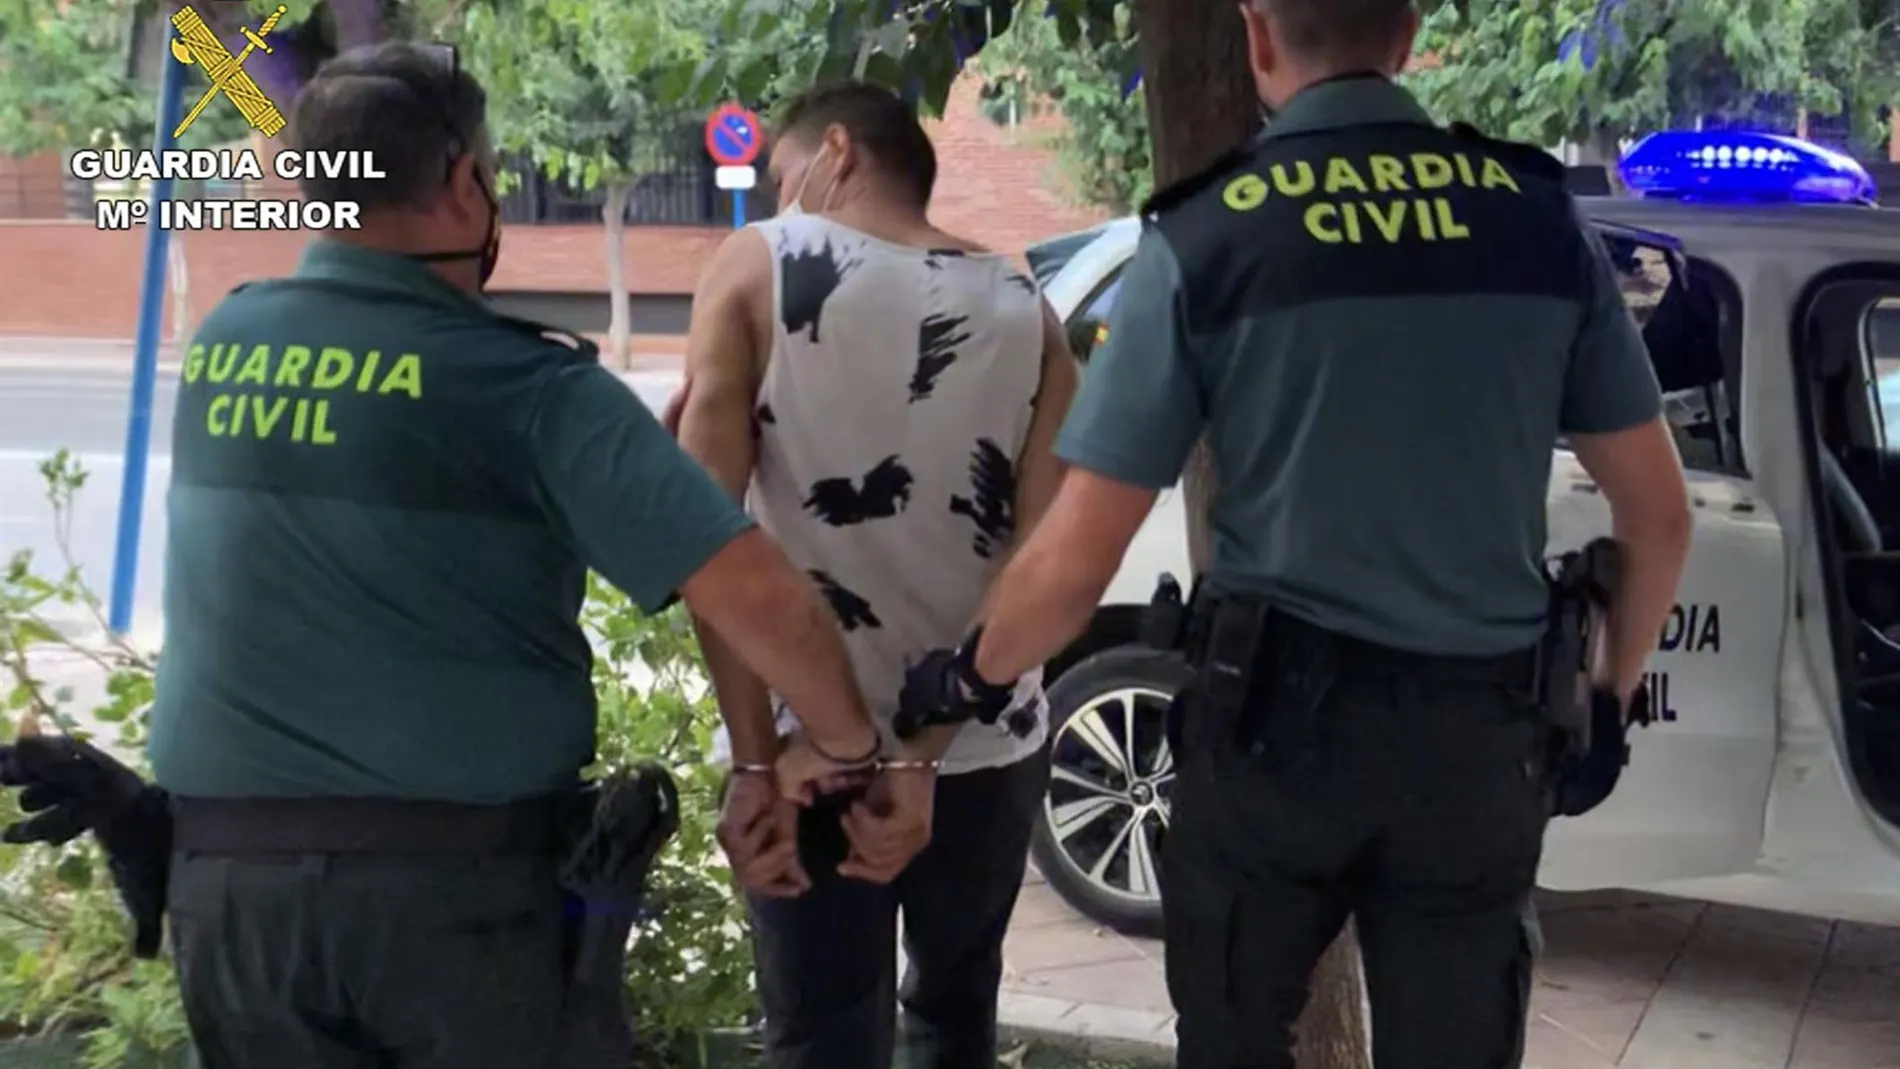 El sospechoso, de 35 años, fue detenido en Alguazas